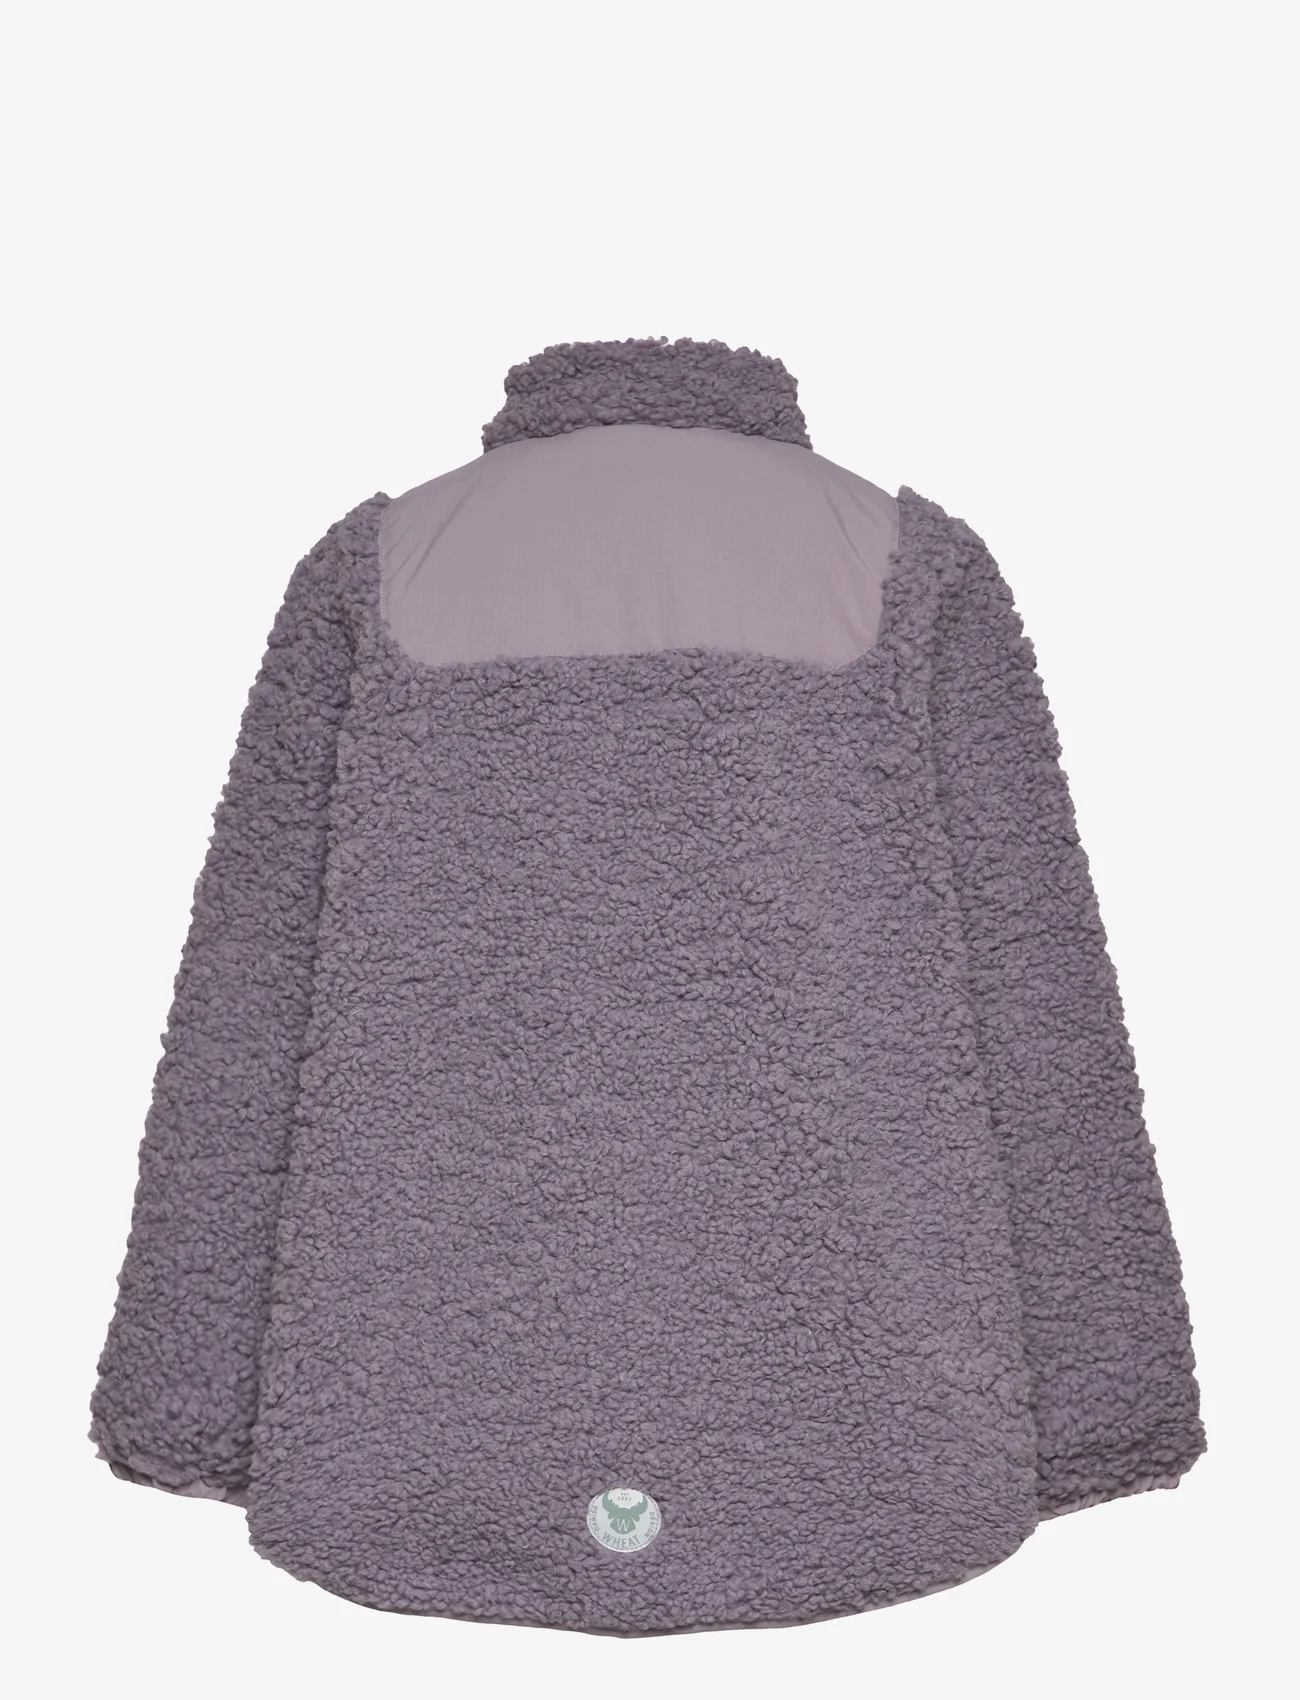 Wheat - Pile Jacket Vema - fleece jacket - lavender - 1